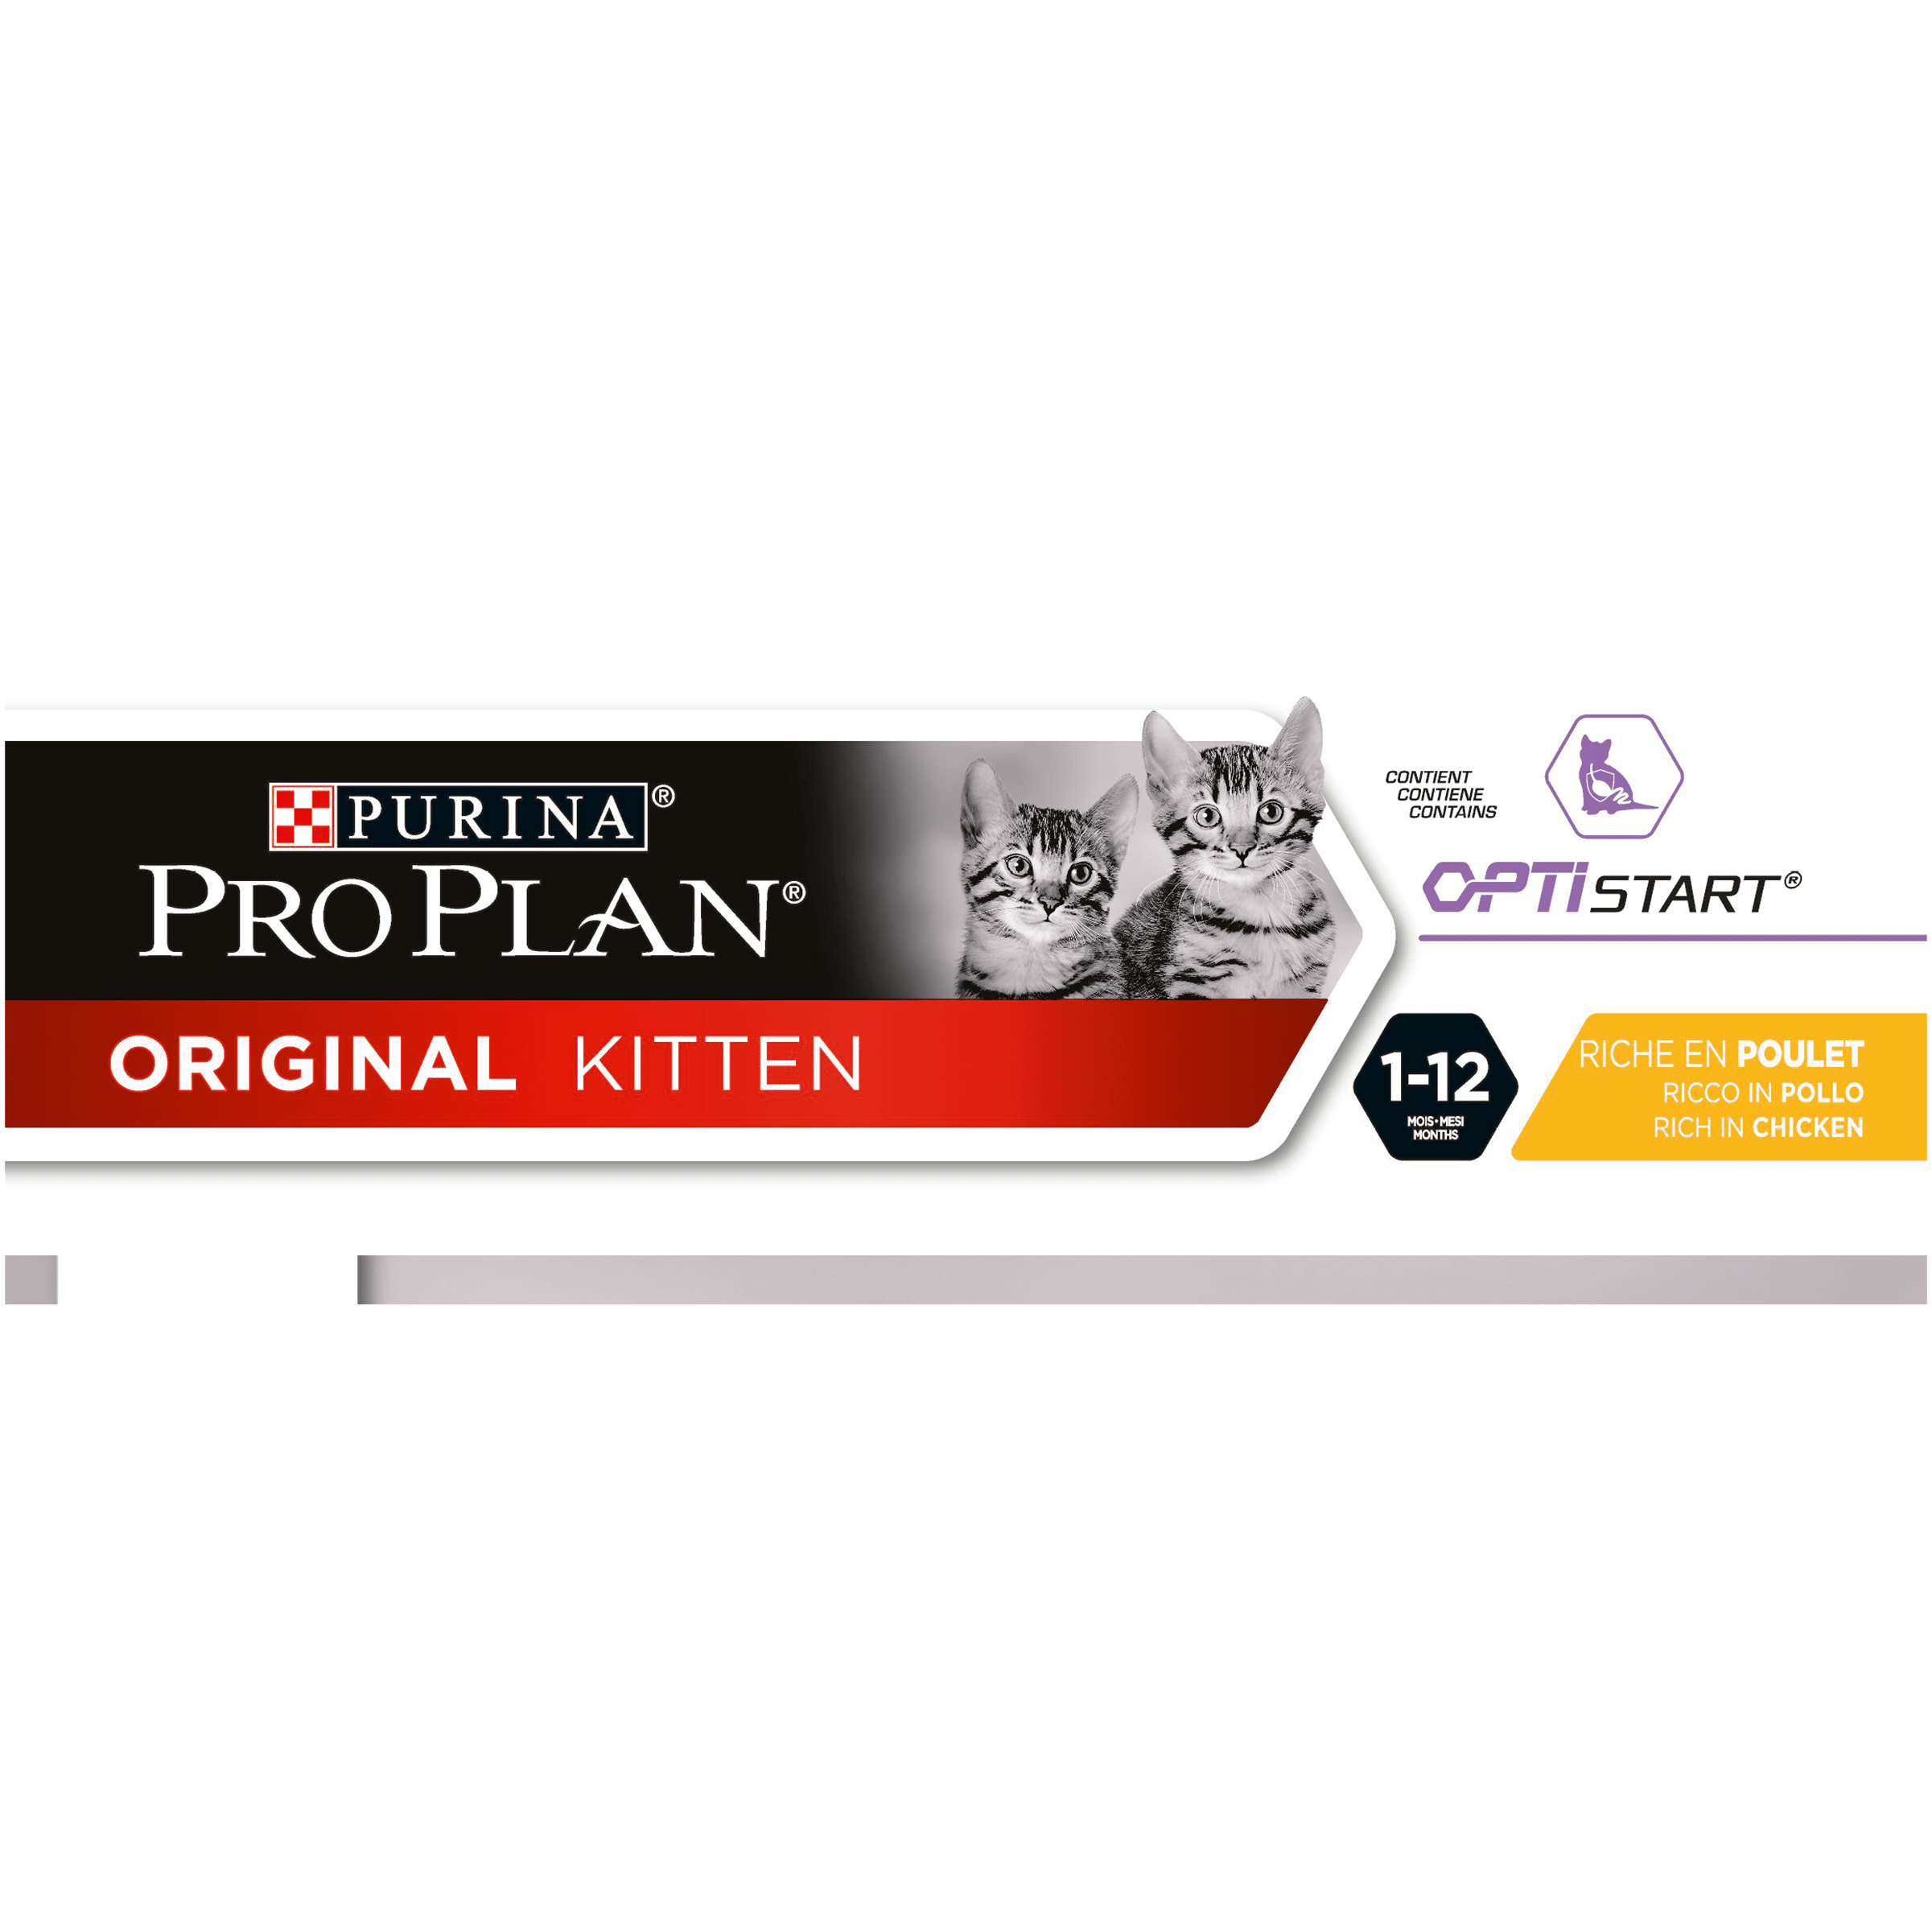 Pro plan пропал. Pro Plan лосось Original 1.5 кг. Purina Pro Plan Original. Pro Plan Original Kitten корм для котят от 1 до 12 месяцев. Purina Pro Plan Opti.